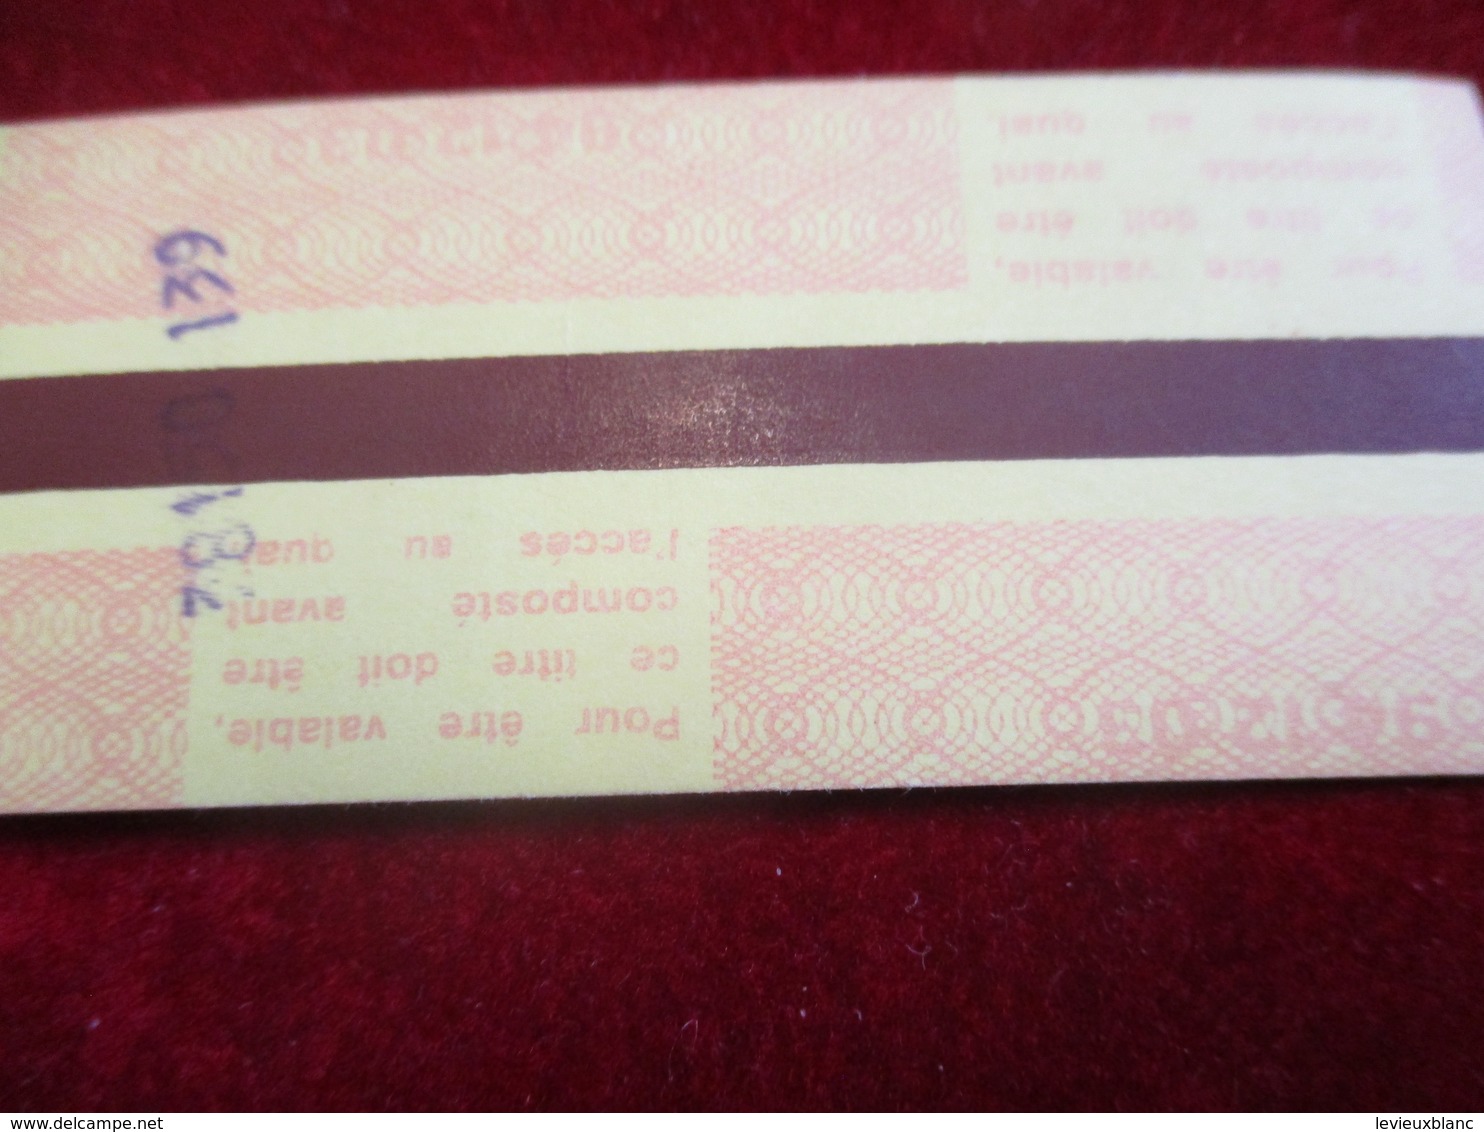 3 Tickets Anciens / Metropolitain/ 2émeClasse  / Gare Du NORD/Paris ST LAZARE/MANTES /vers 1990  TCK4 - Europa